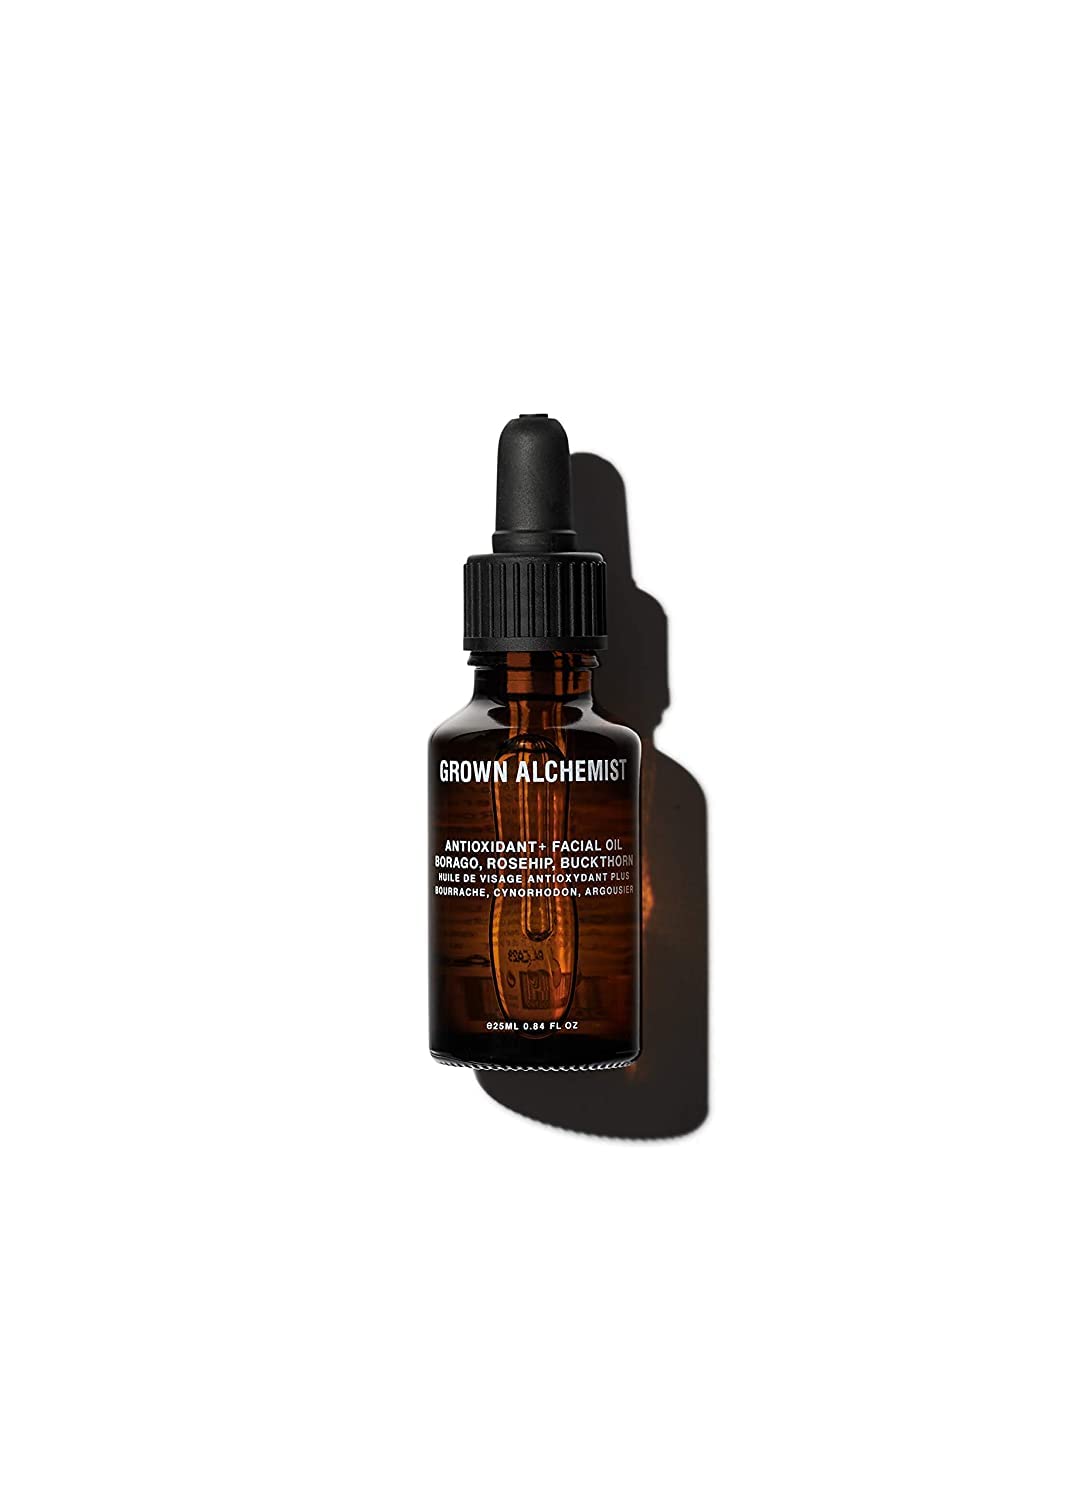 Grown Alchemist Antioxidant + Gesichtsöl: Feuchtigkeit und bekämpft sichtbare Zeichen der Hautalterung – die Haut prall und geschmeidig aussehen – 25 ml